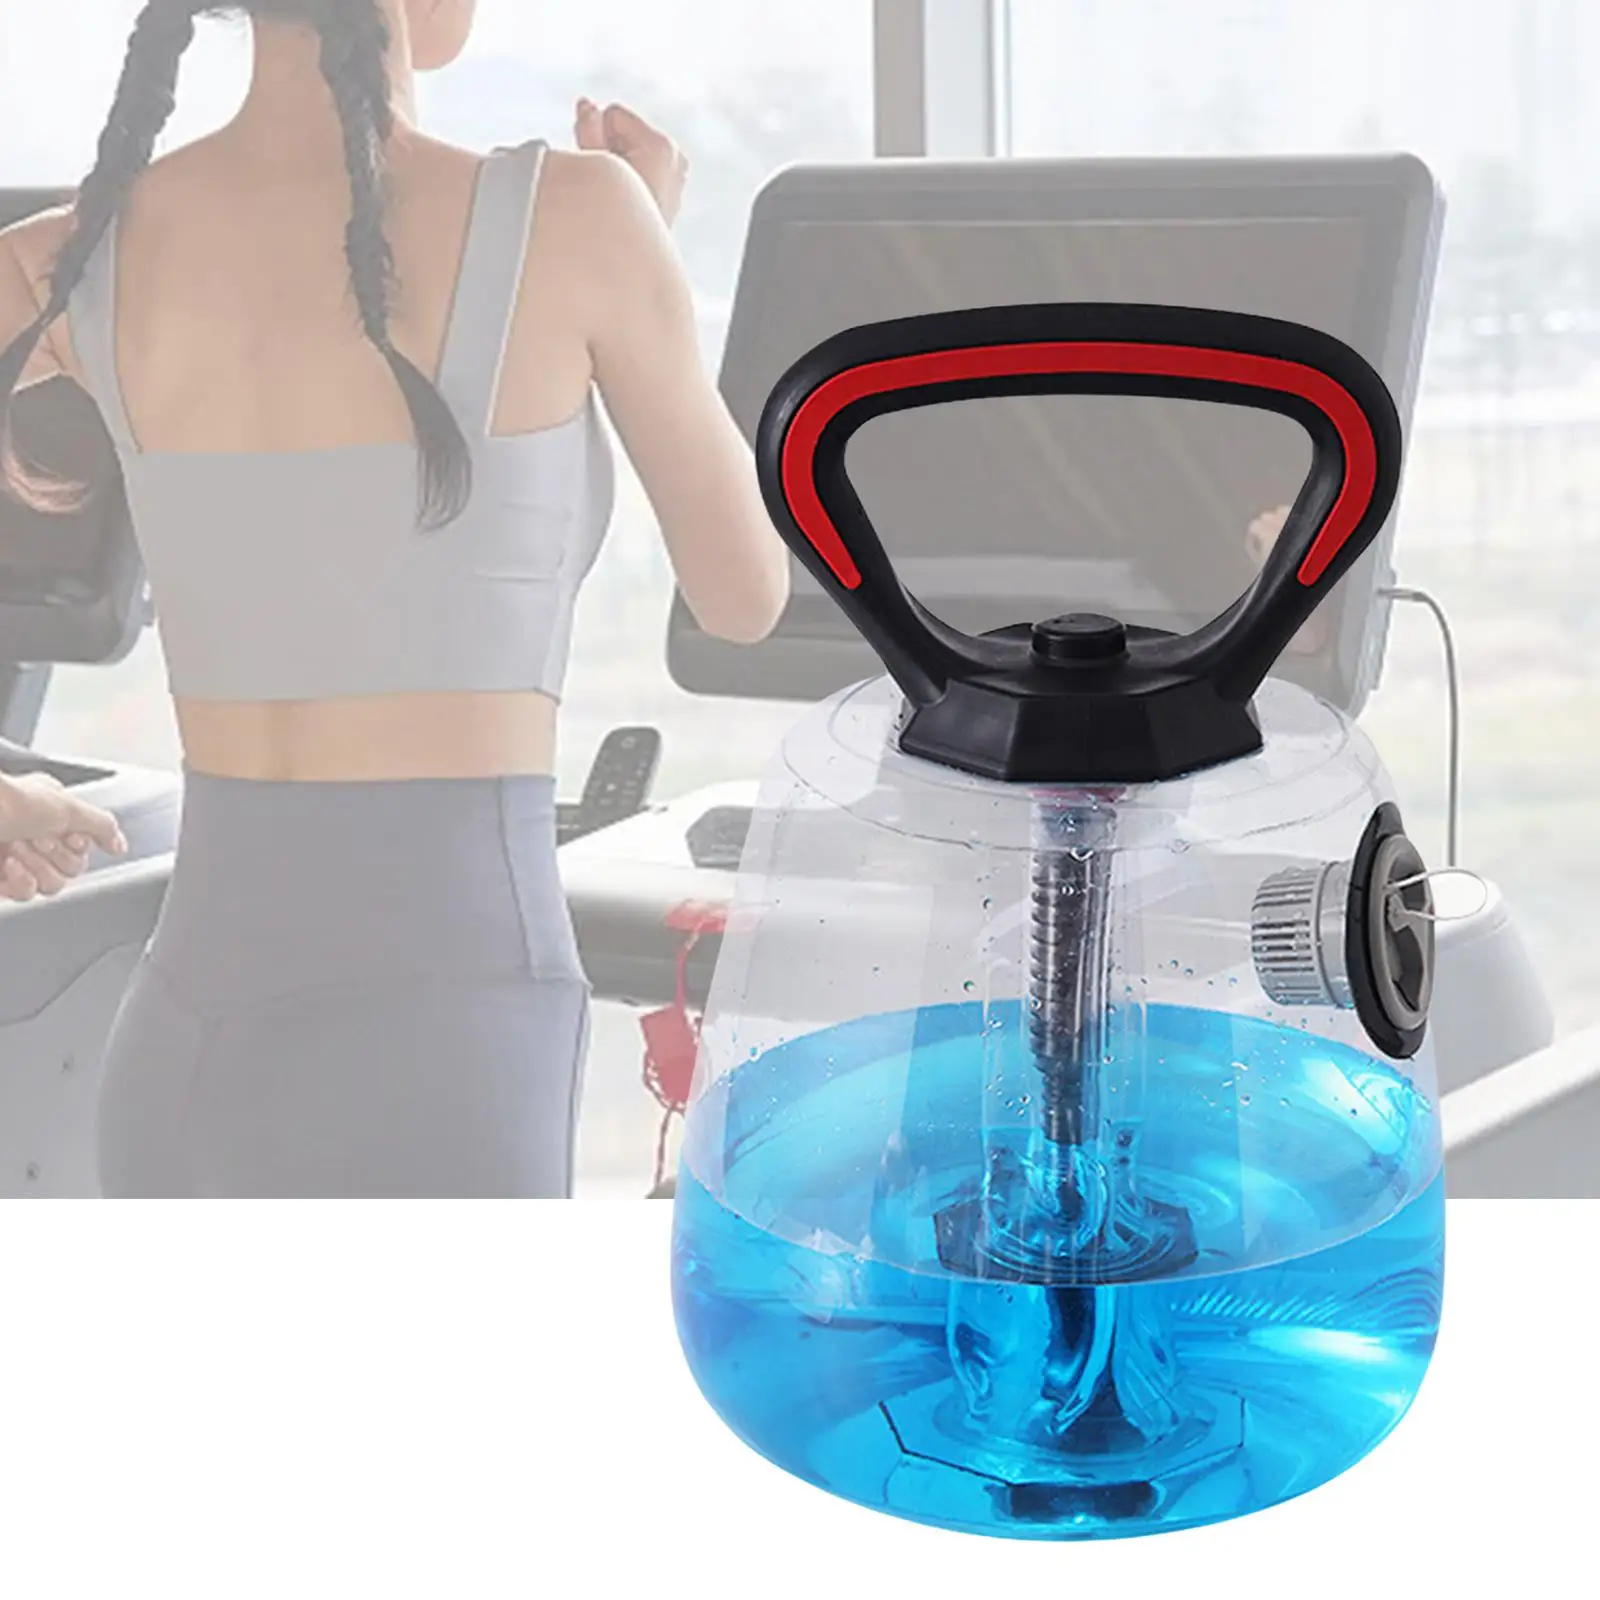 

Water Filled Kettlebell Adjustable Strength Training Equipment Kettle Bells Exercise for Travel Full Body Men Exercising Gym